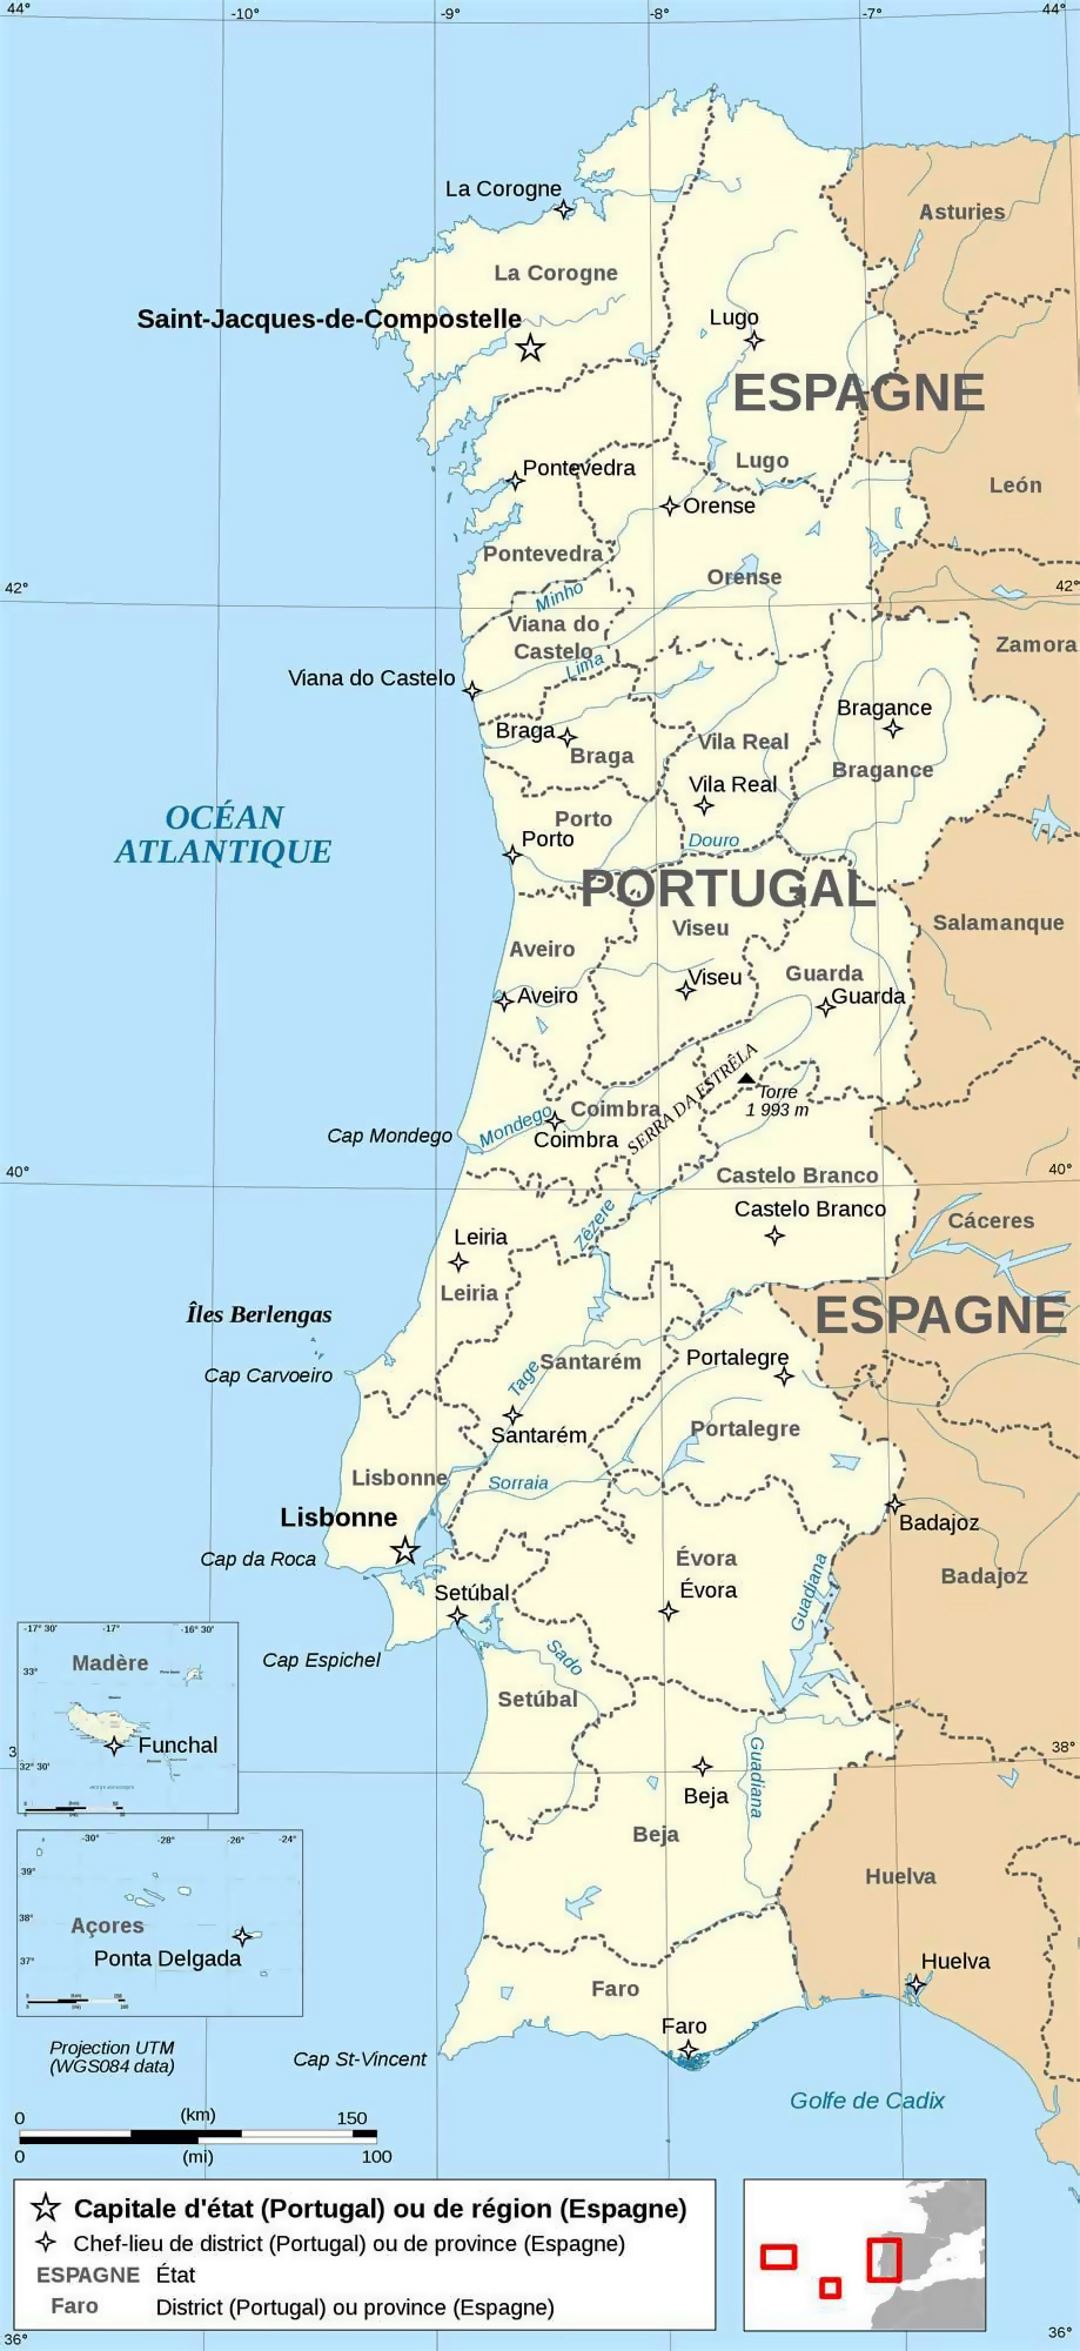 Grande mapa político y administrativo de Portugal con principales ciudades